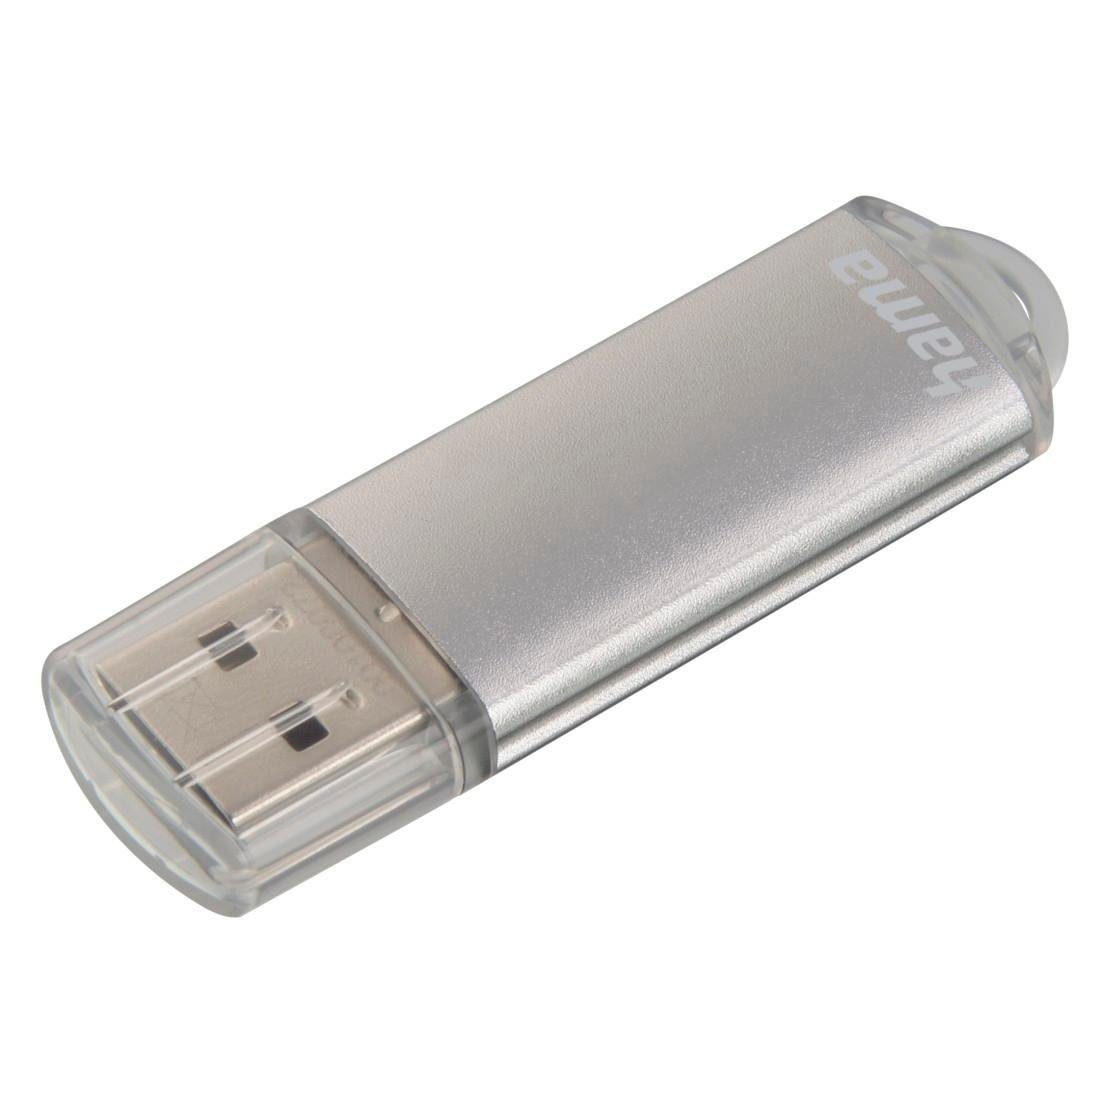 Hama USB-Stick "Laeta", USB 2.0, 16 GB, 10MB/s, Grau USB-Stick (Lesegeschwindigkeit 10 MB/s)